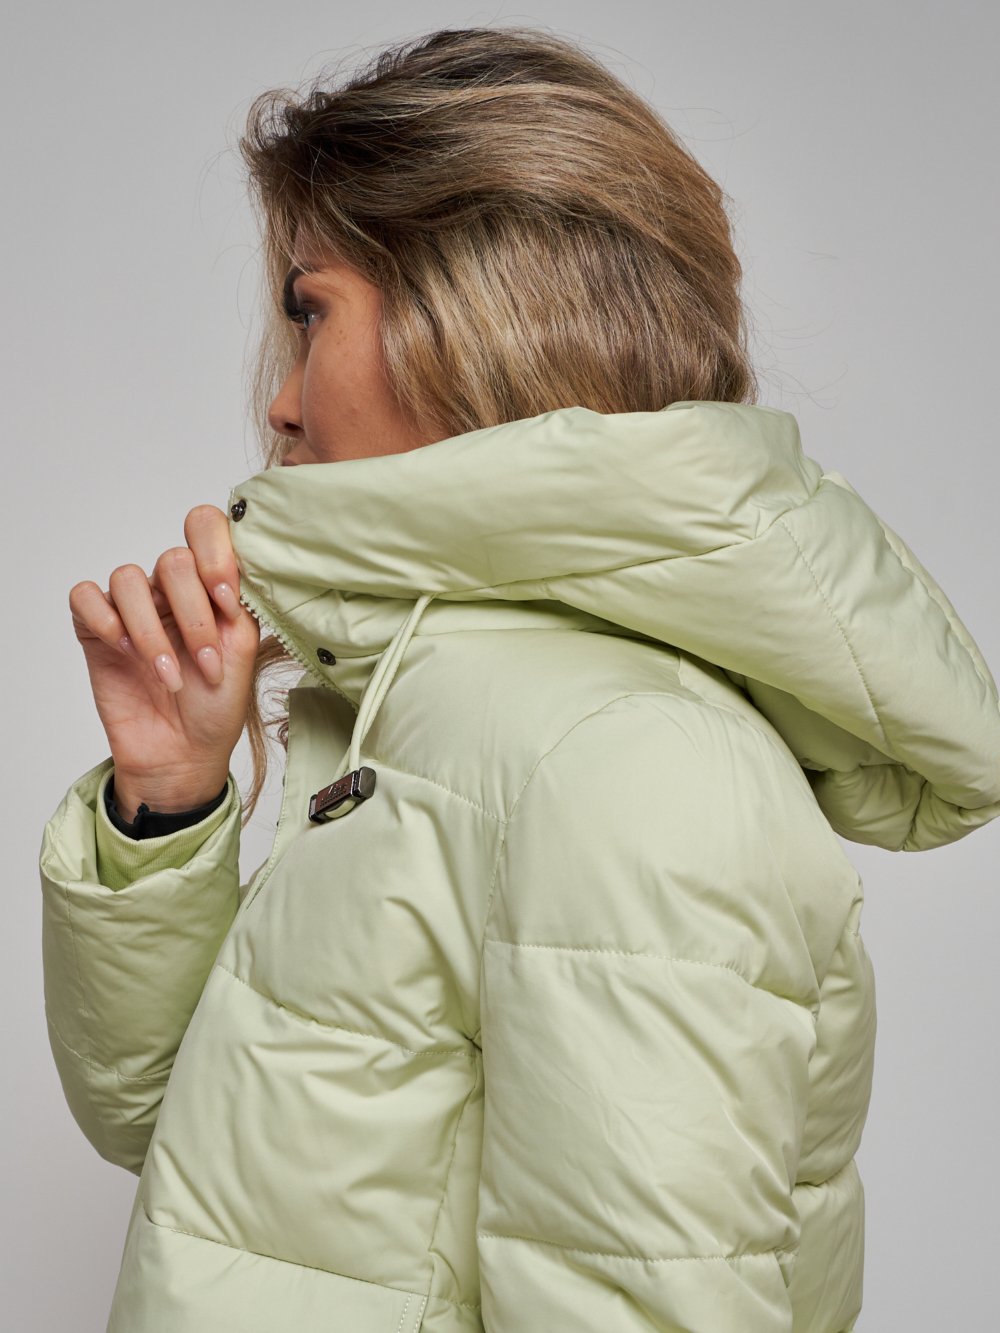 Купить куртку зимнюю оптом от производителя недорого в Москве 52303Sl 1